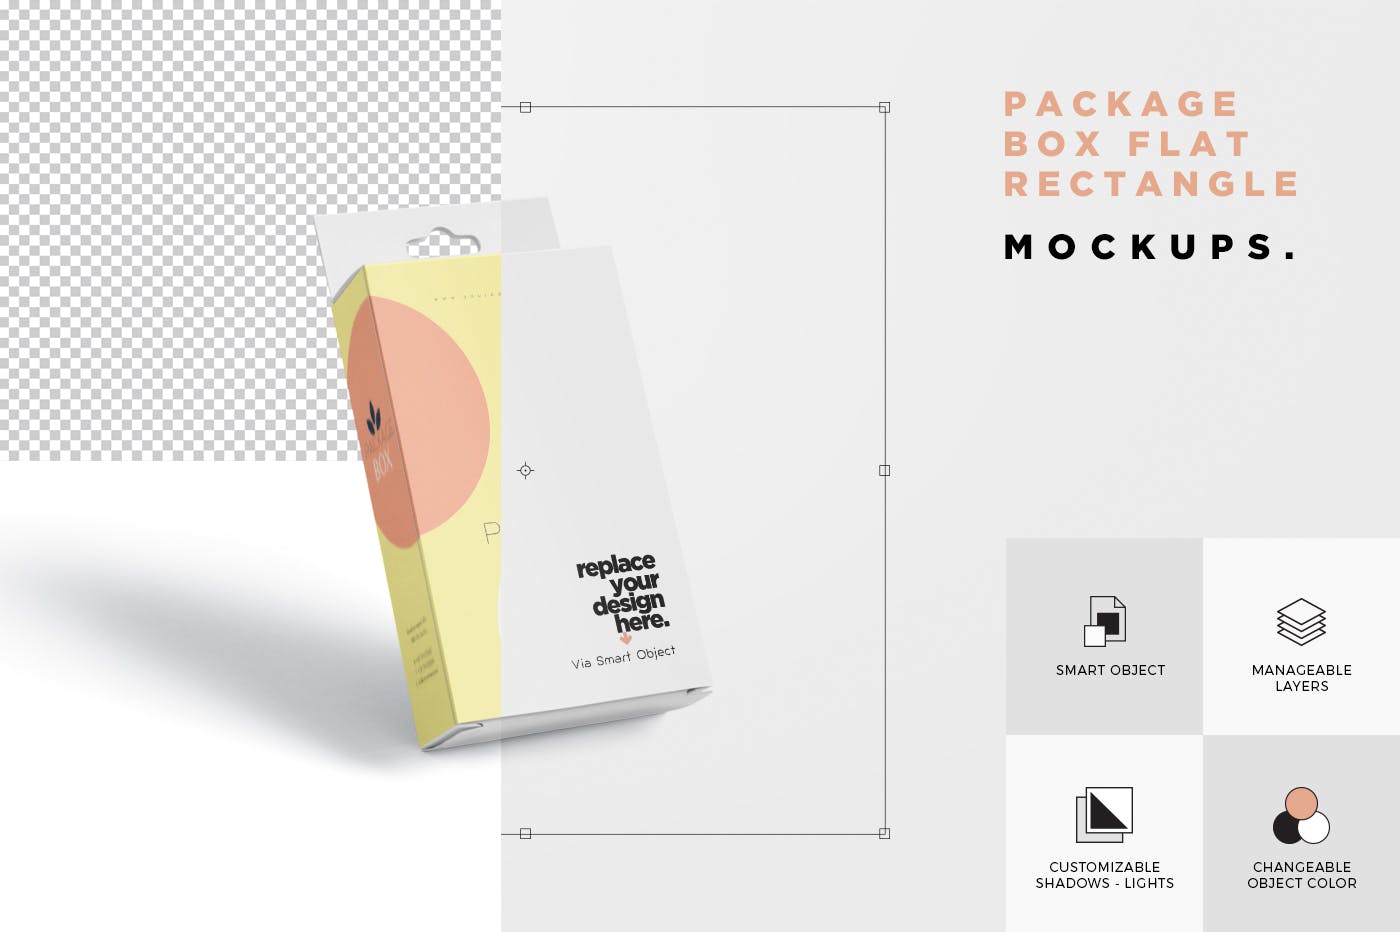 带挂耳设计扁平矩形产品包装盒效果图第一素材精选 Package Box Mockup Set- Flat Rectangle with Hanger插图(7)